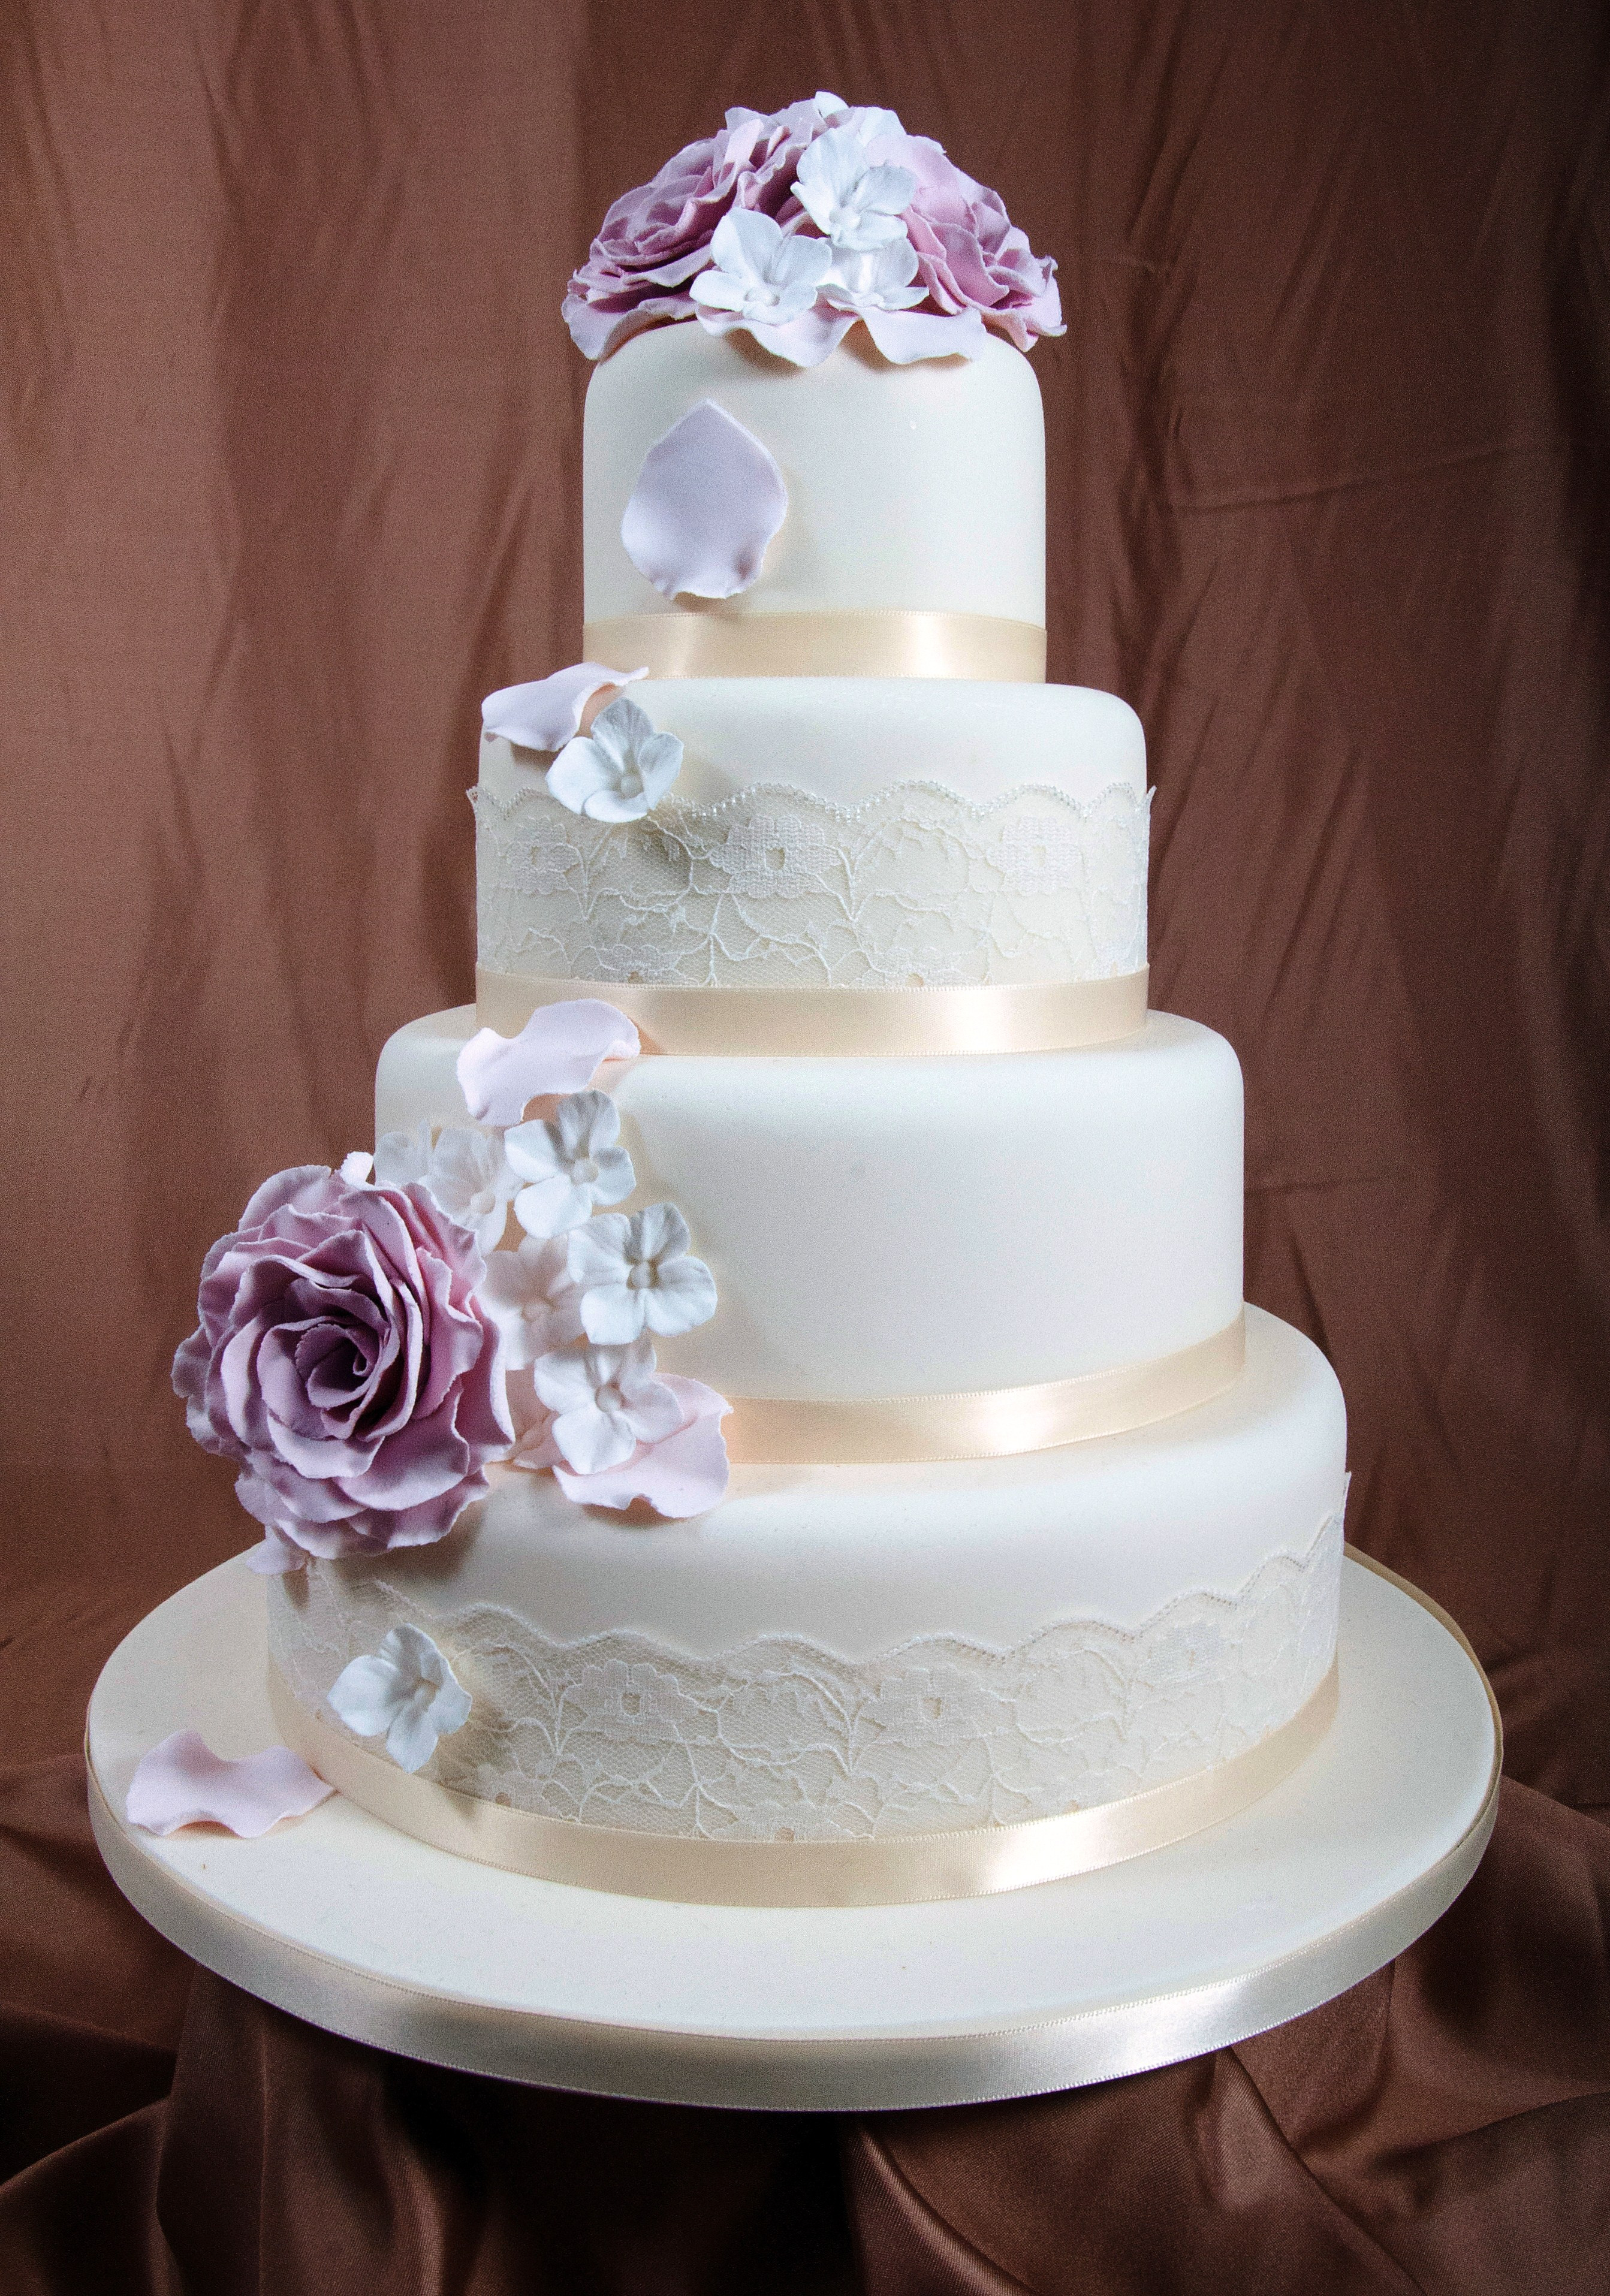 Top Tier Wedding Cakes
 Top tier wedding cake idea in 2017